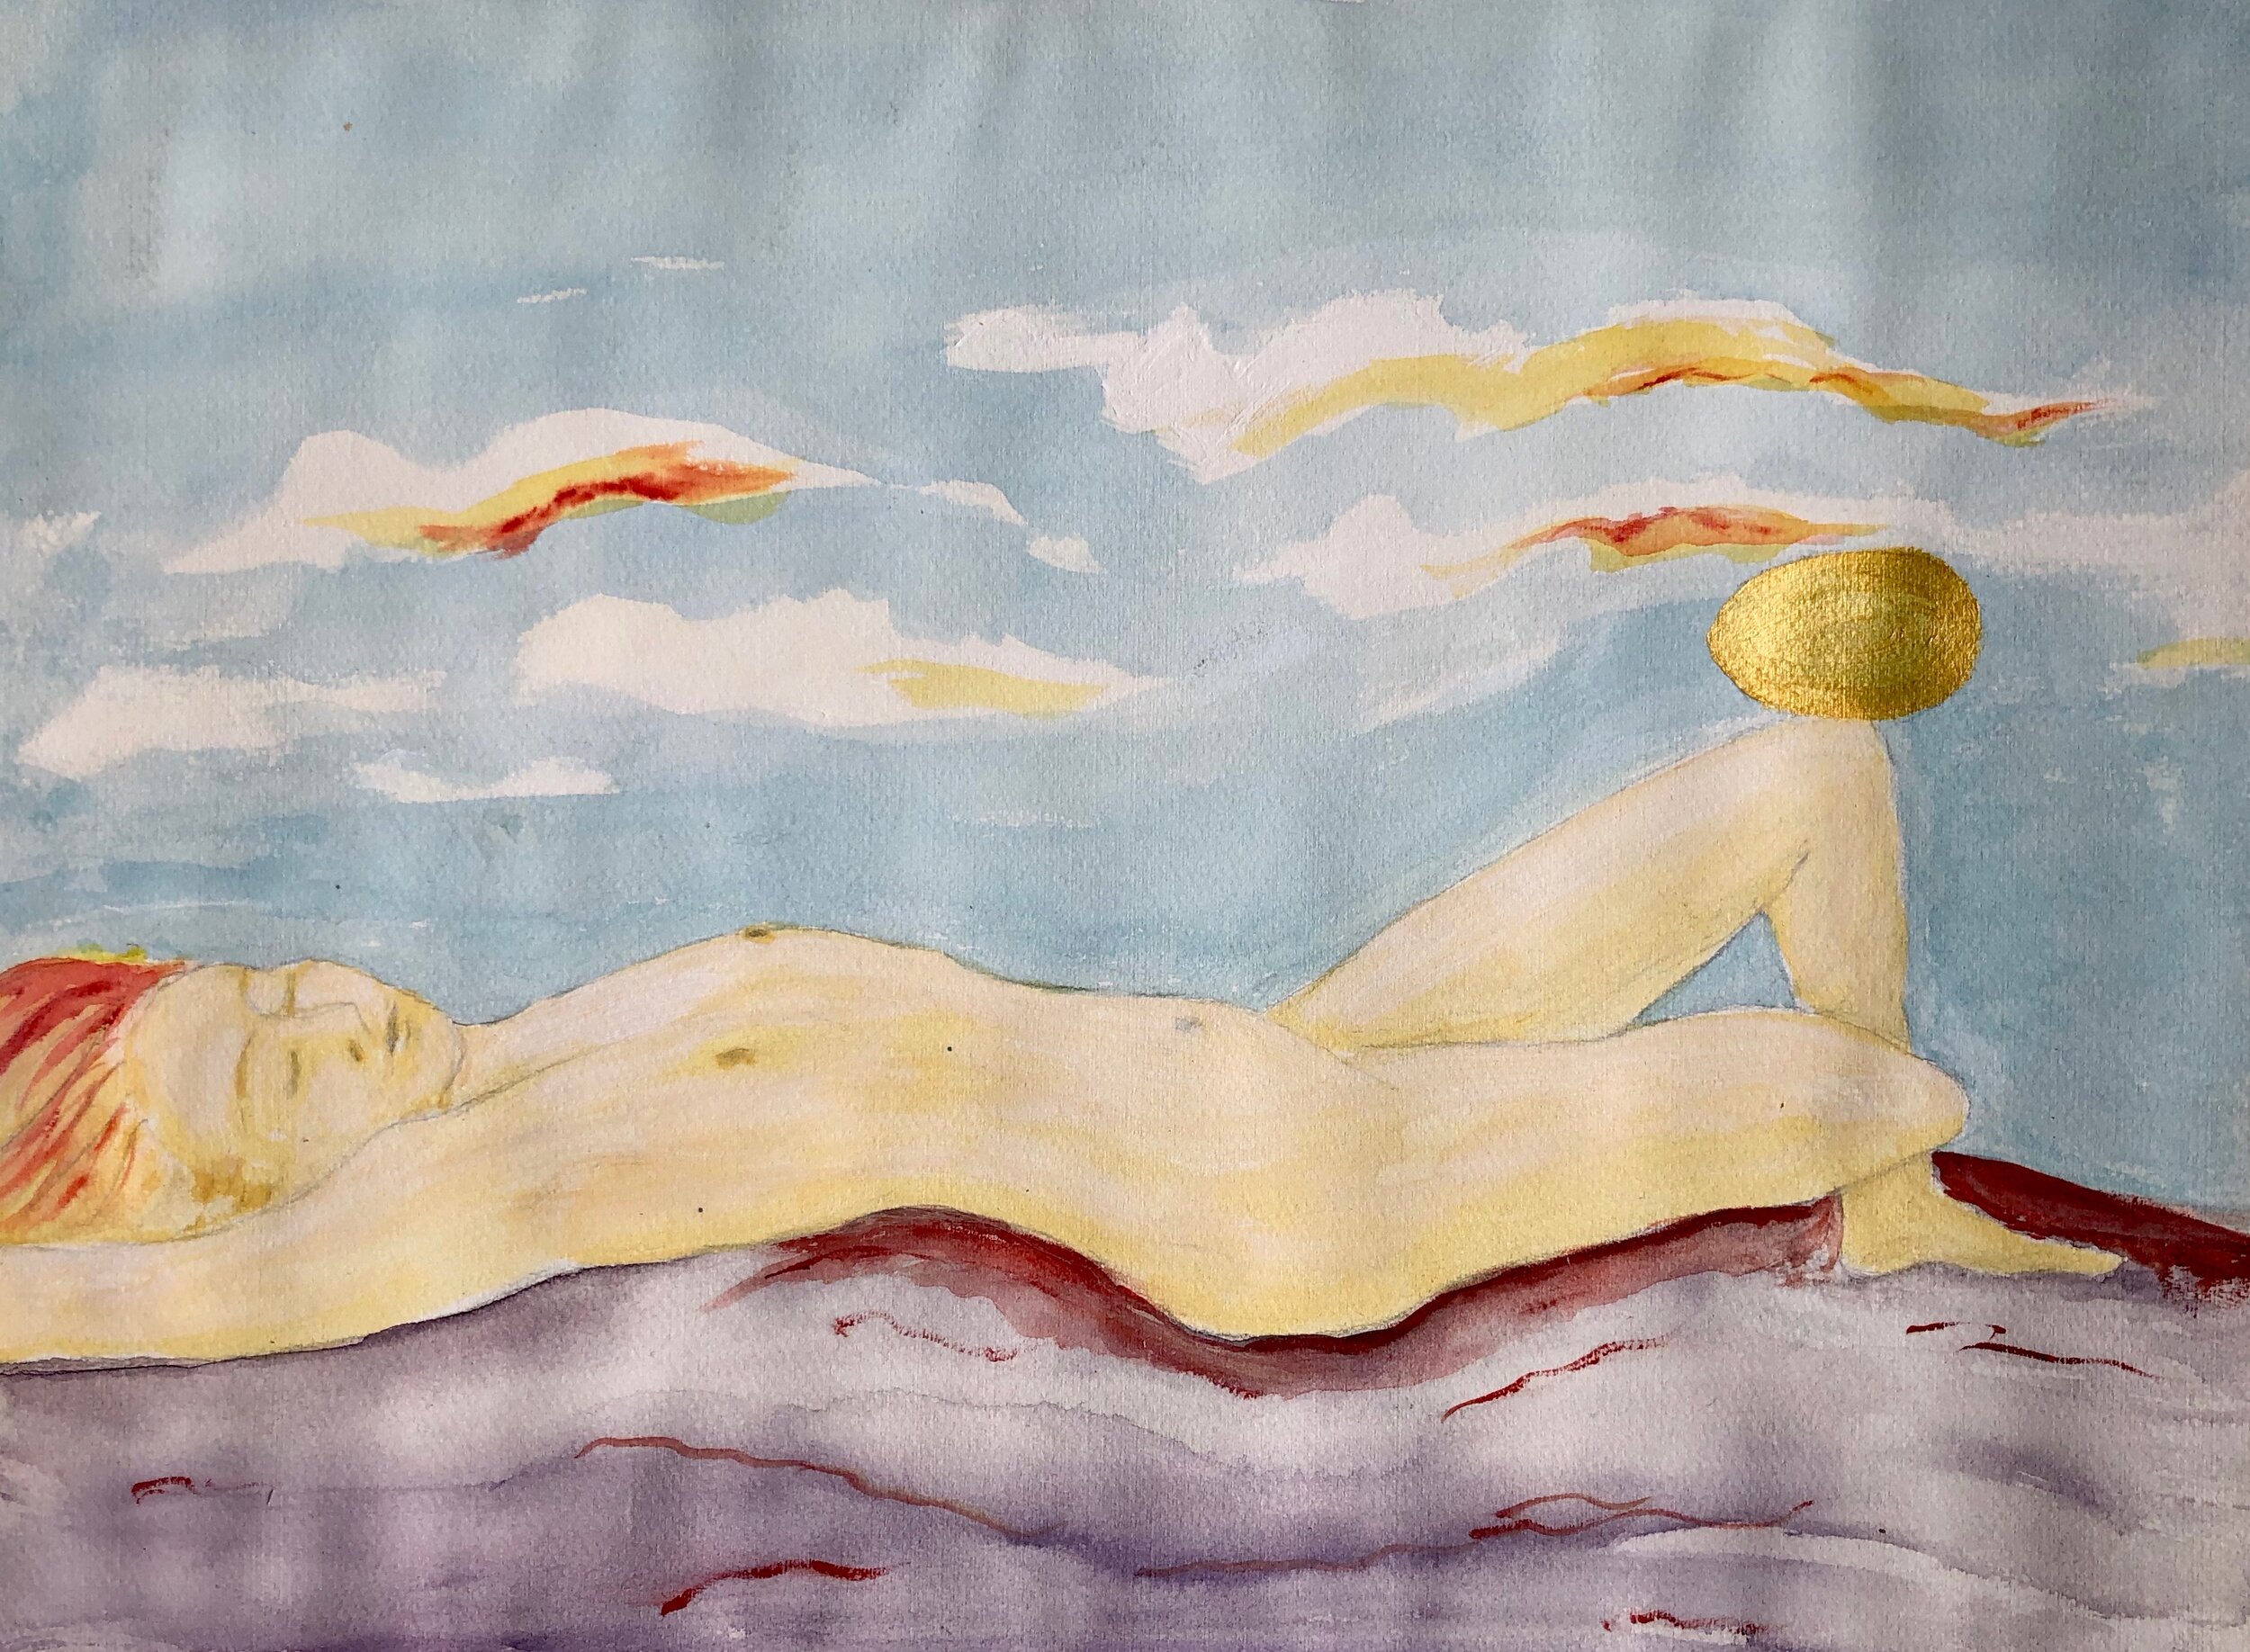  MOTHER OF WATER / VEEN EMONEN, 2014, watercolour and acrylic, 34x46cm 